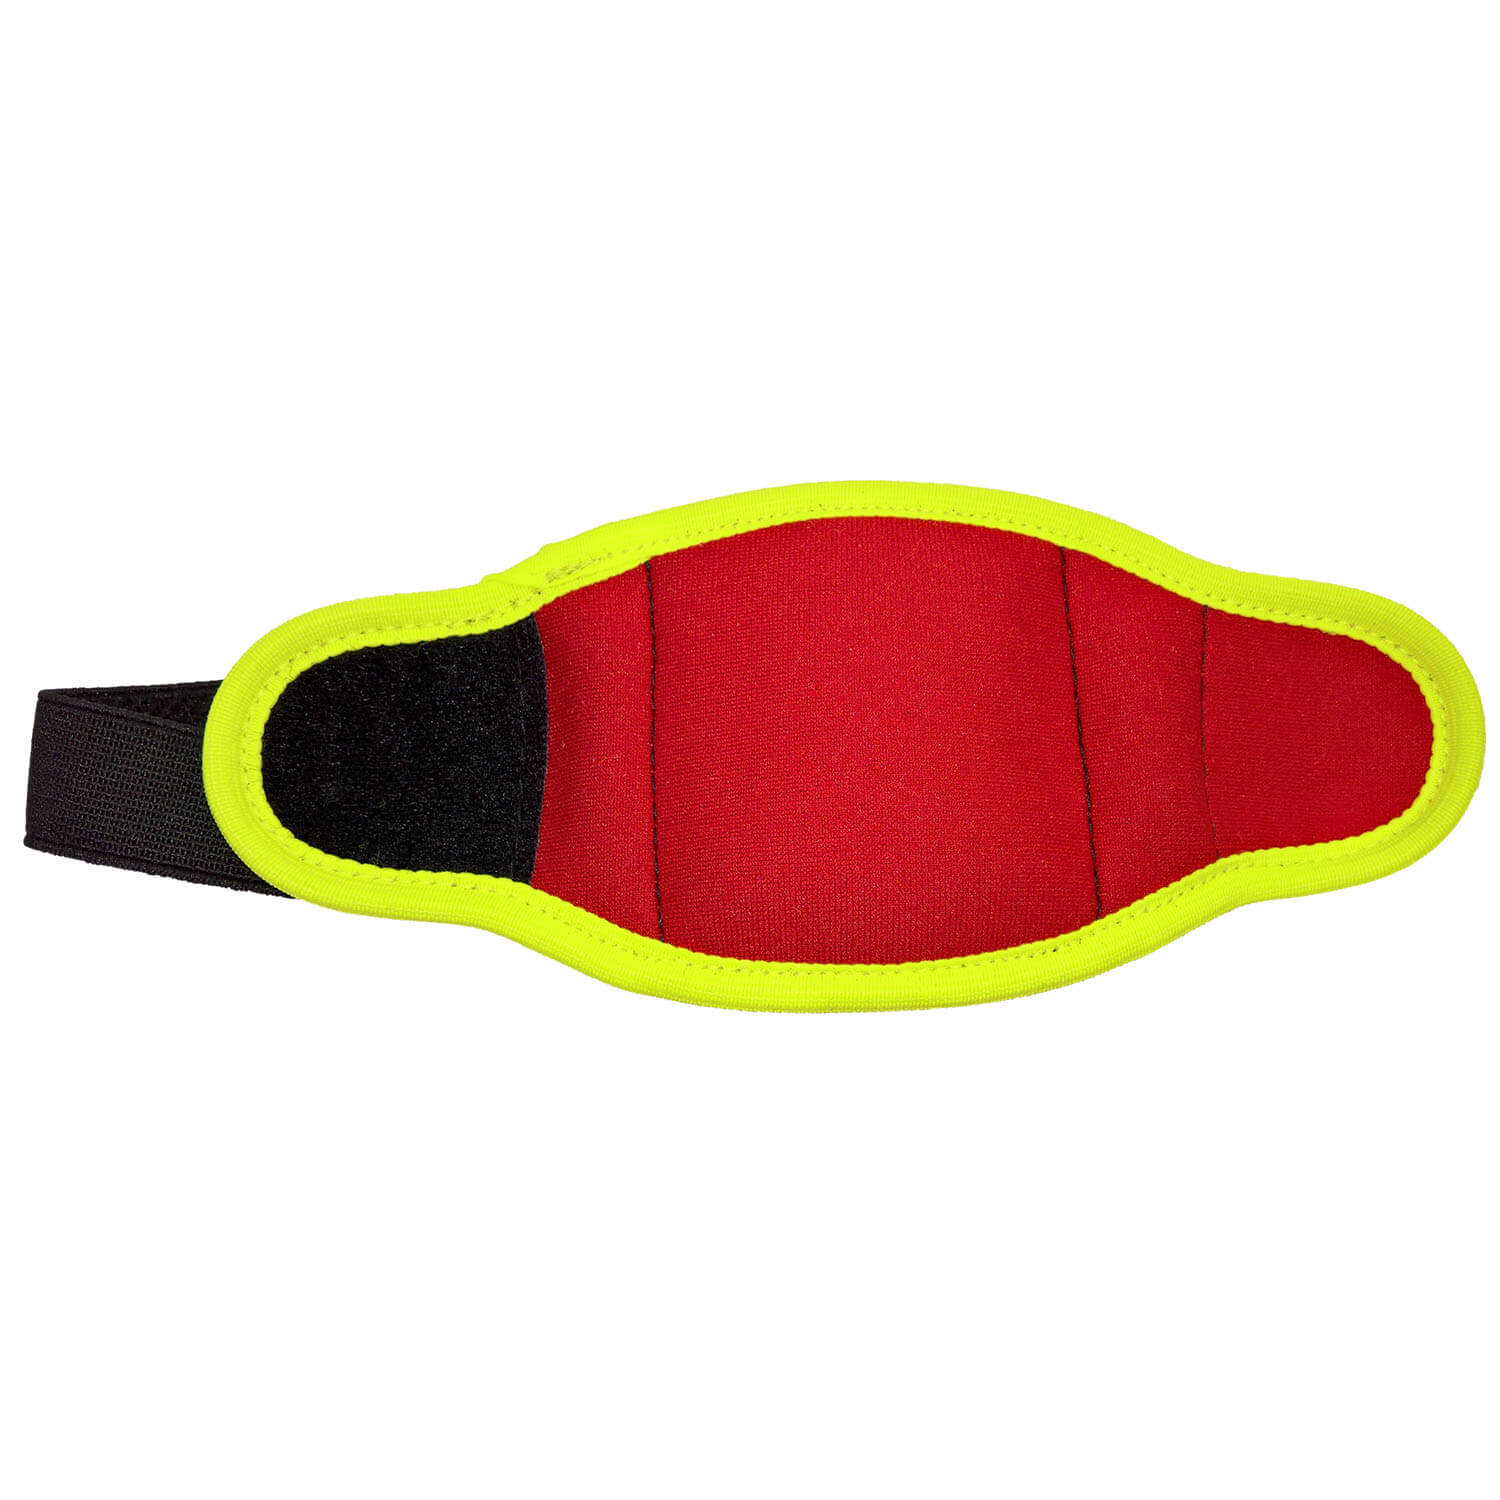 Niggeloh GPS-Tracker Tasche Neopren (Rot/Gelb) - Schweißarbeit